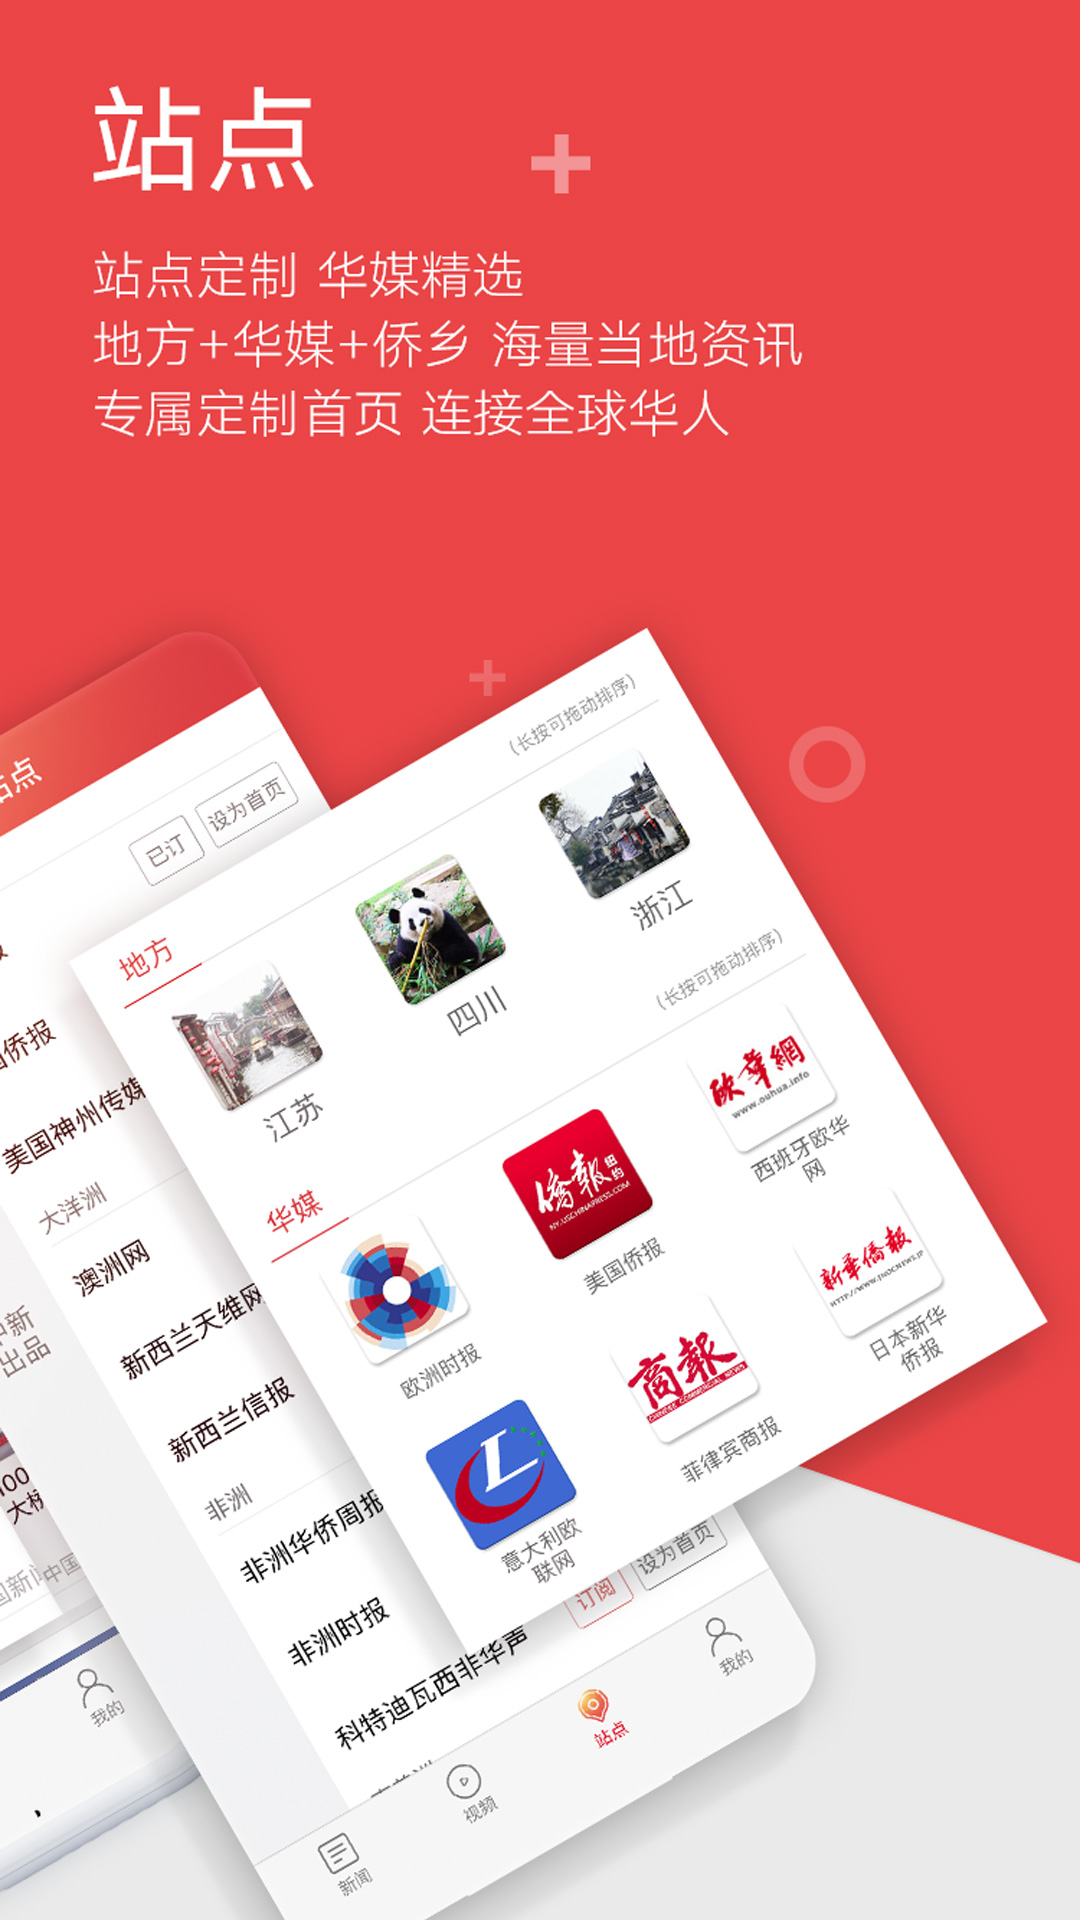 迪拜新闻软件下载网站安卓ebay安卓版app下载中文版